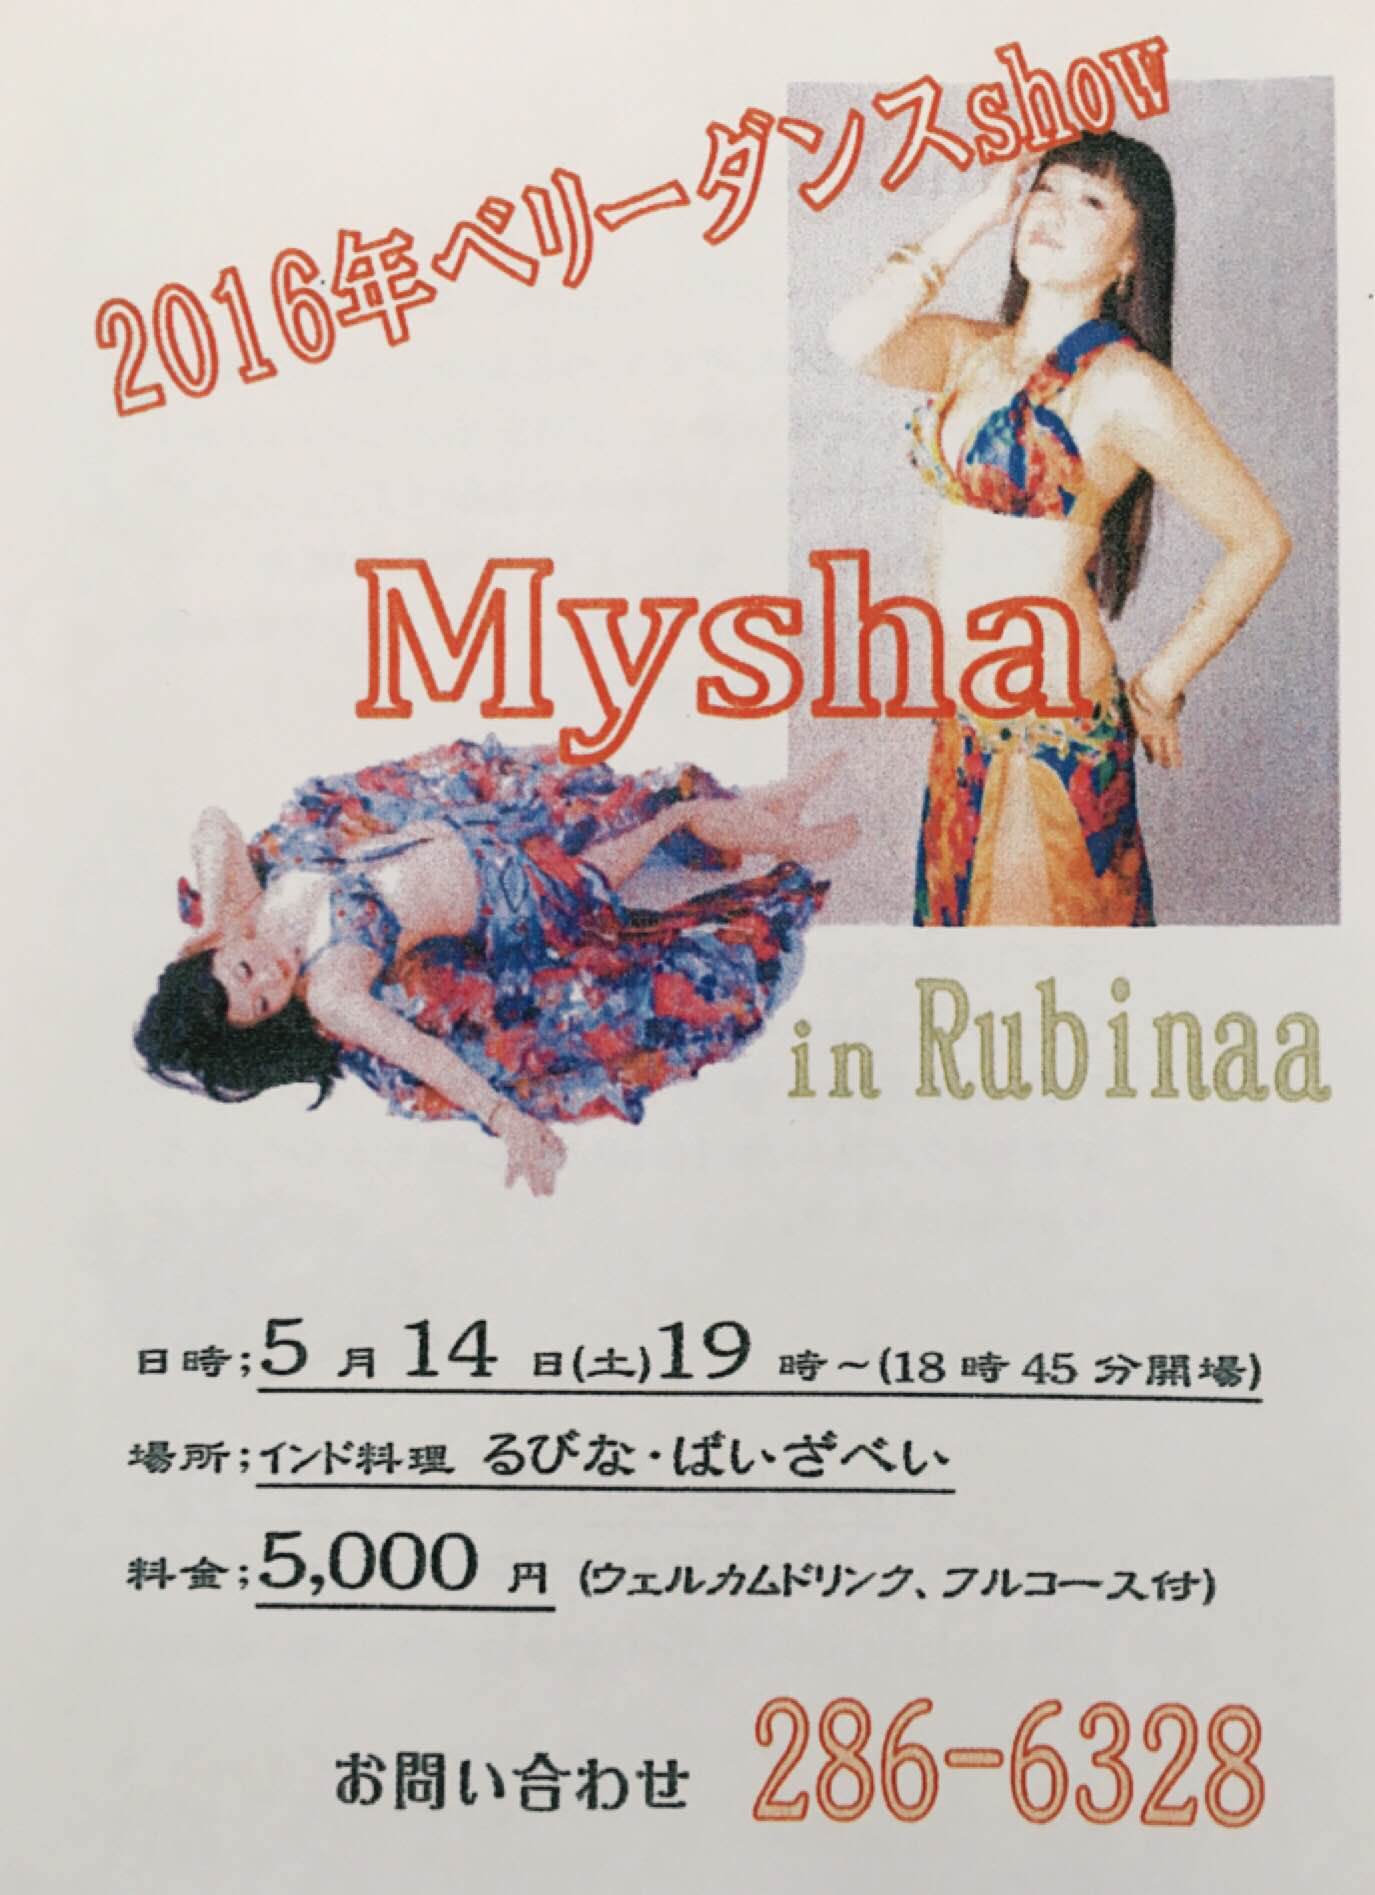 るびなばいざべいベリーダンスショーvol 2 Myshaのblog 石川県金沢市のベリーダンスユニット